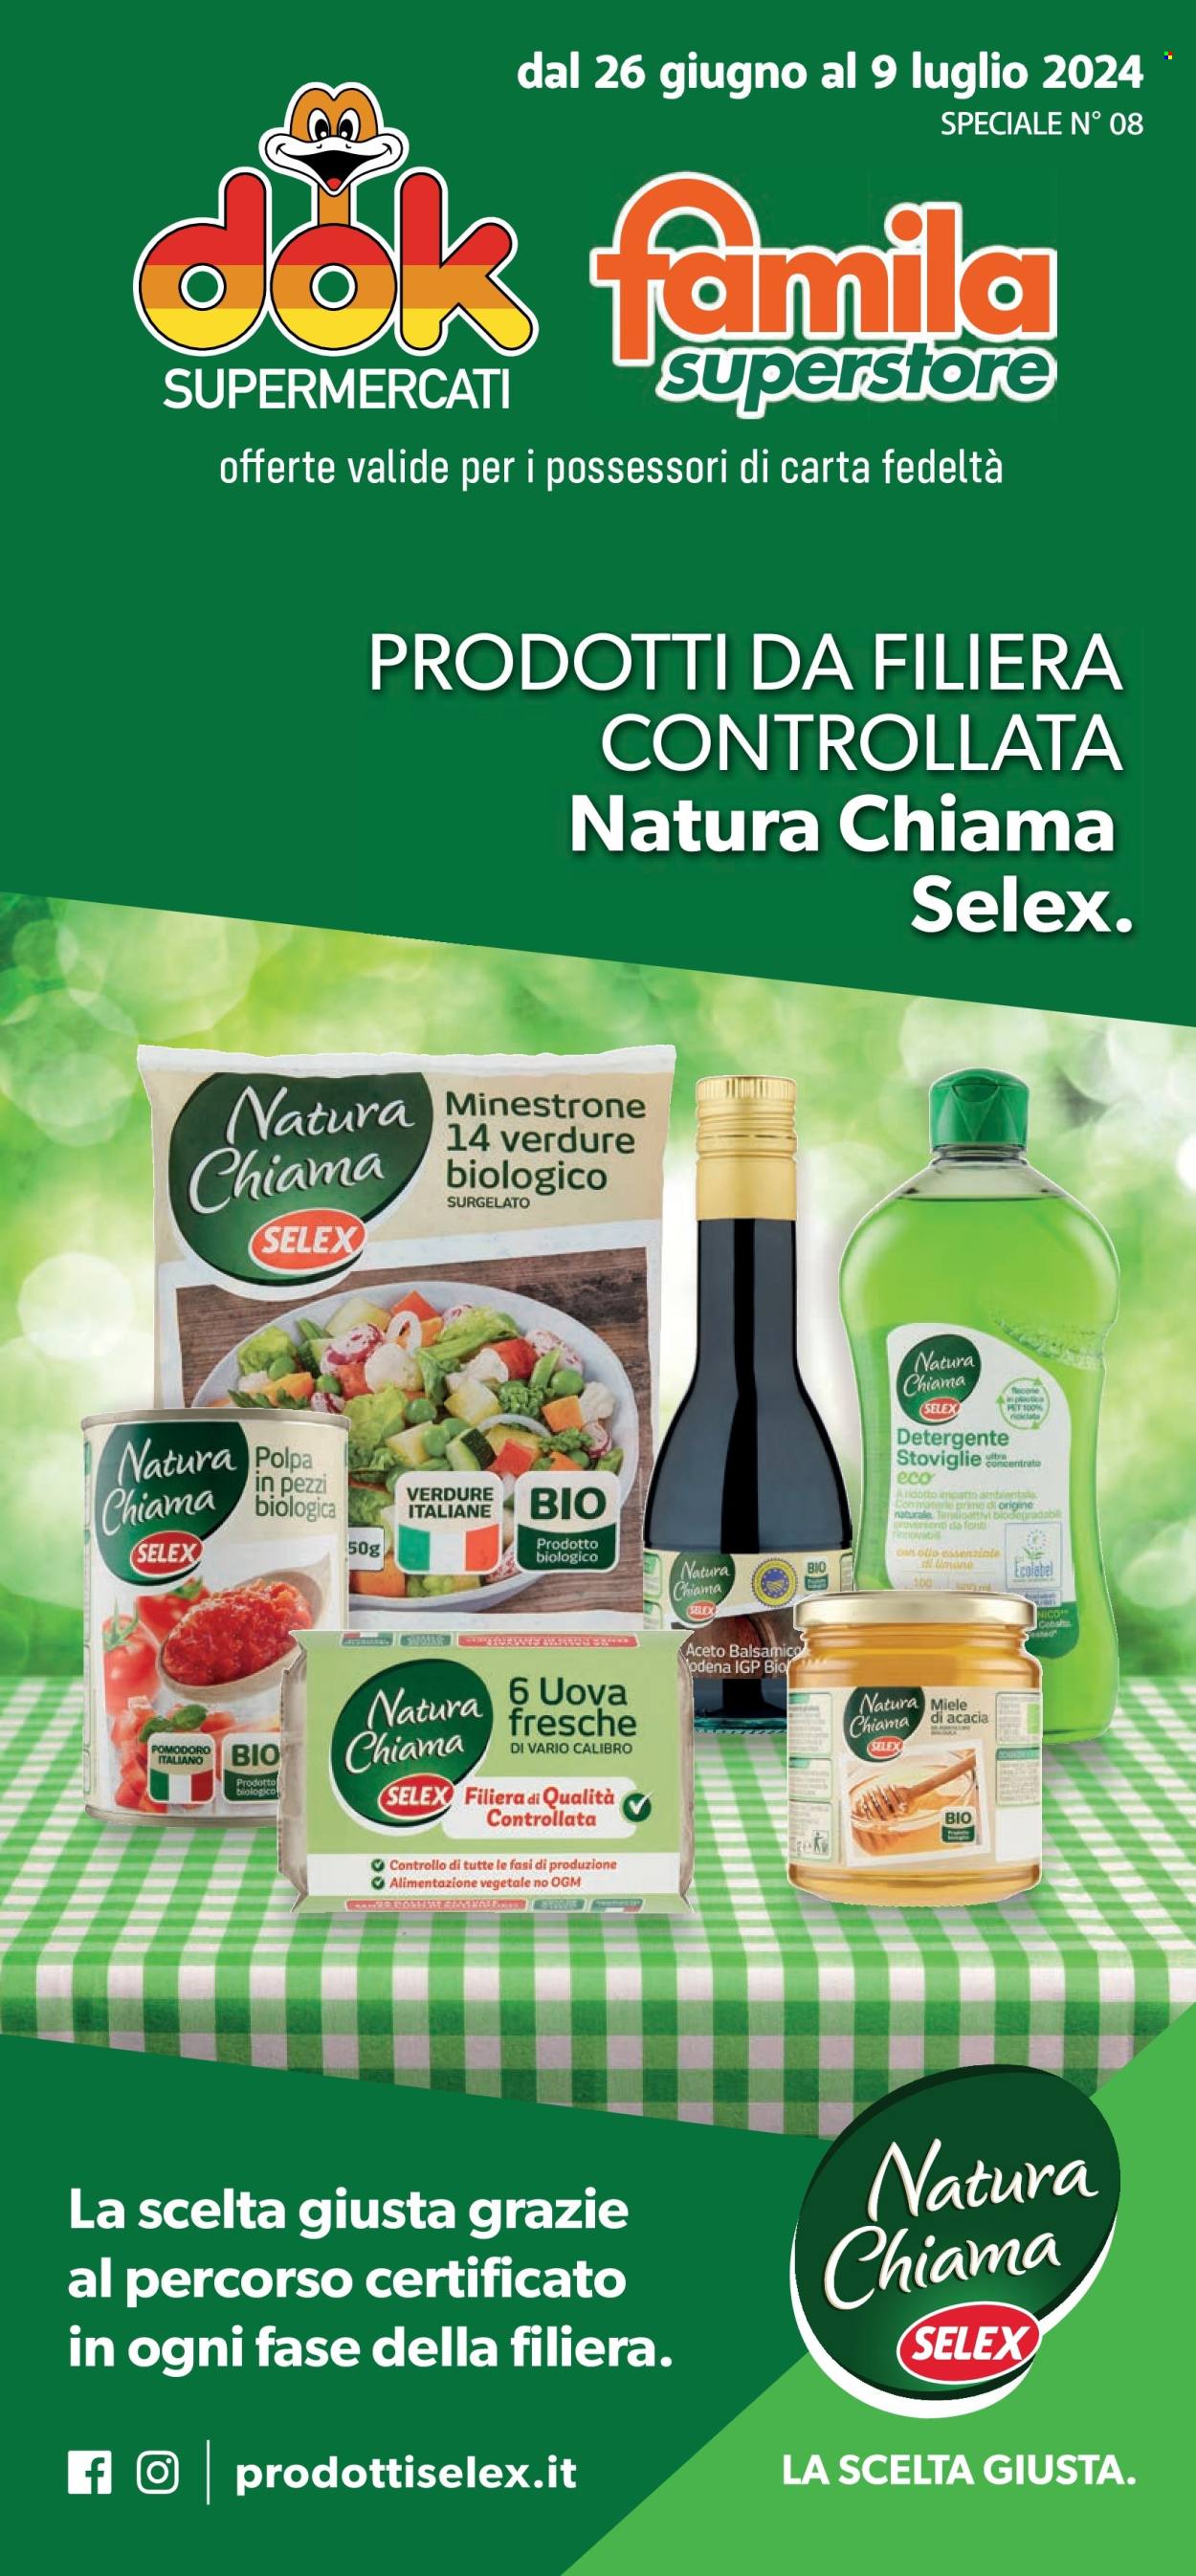 thumbnail - Volantino Supermercati Dok - 26/6/2024 - 9/7/2024 - Prodotti in offerta - pomodori, minestrone, uova, aceto, aceto balsamico, miele, detergente. Pagina 1.